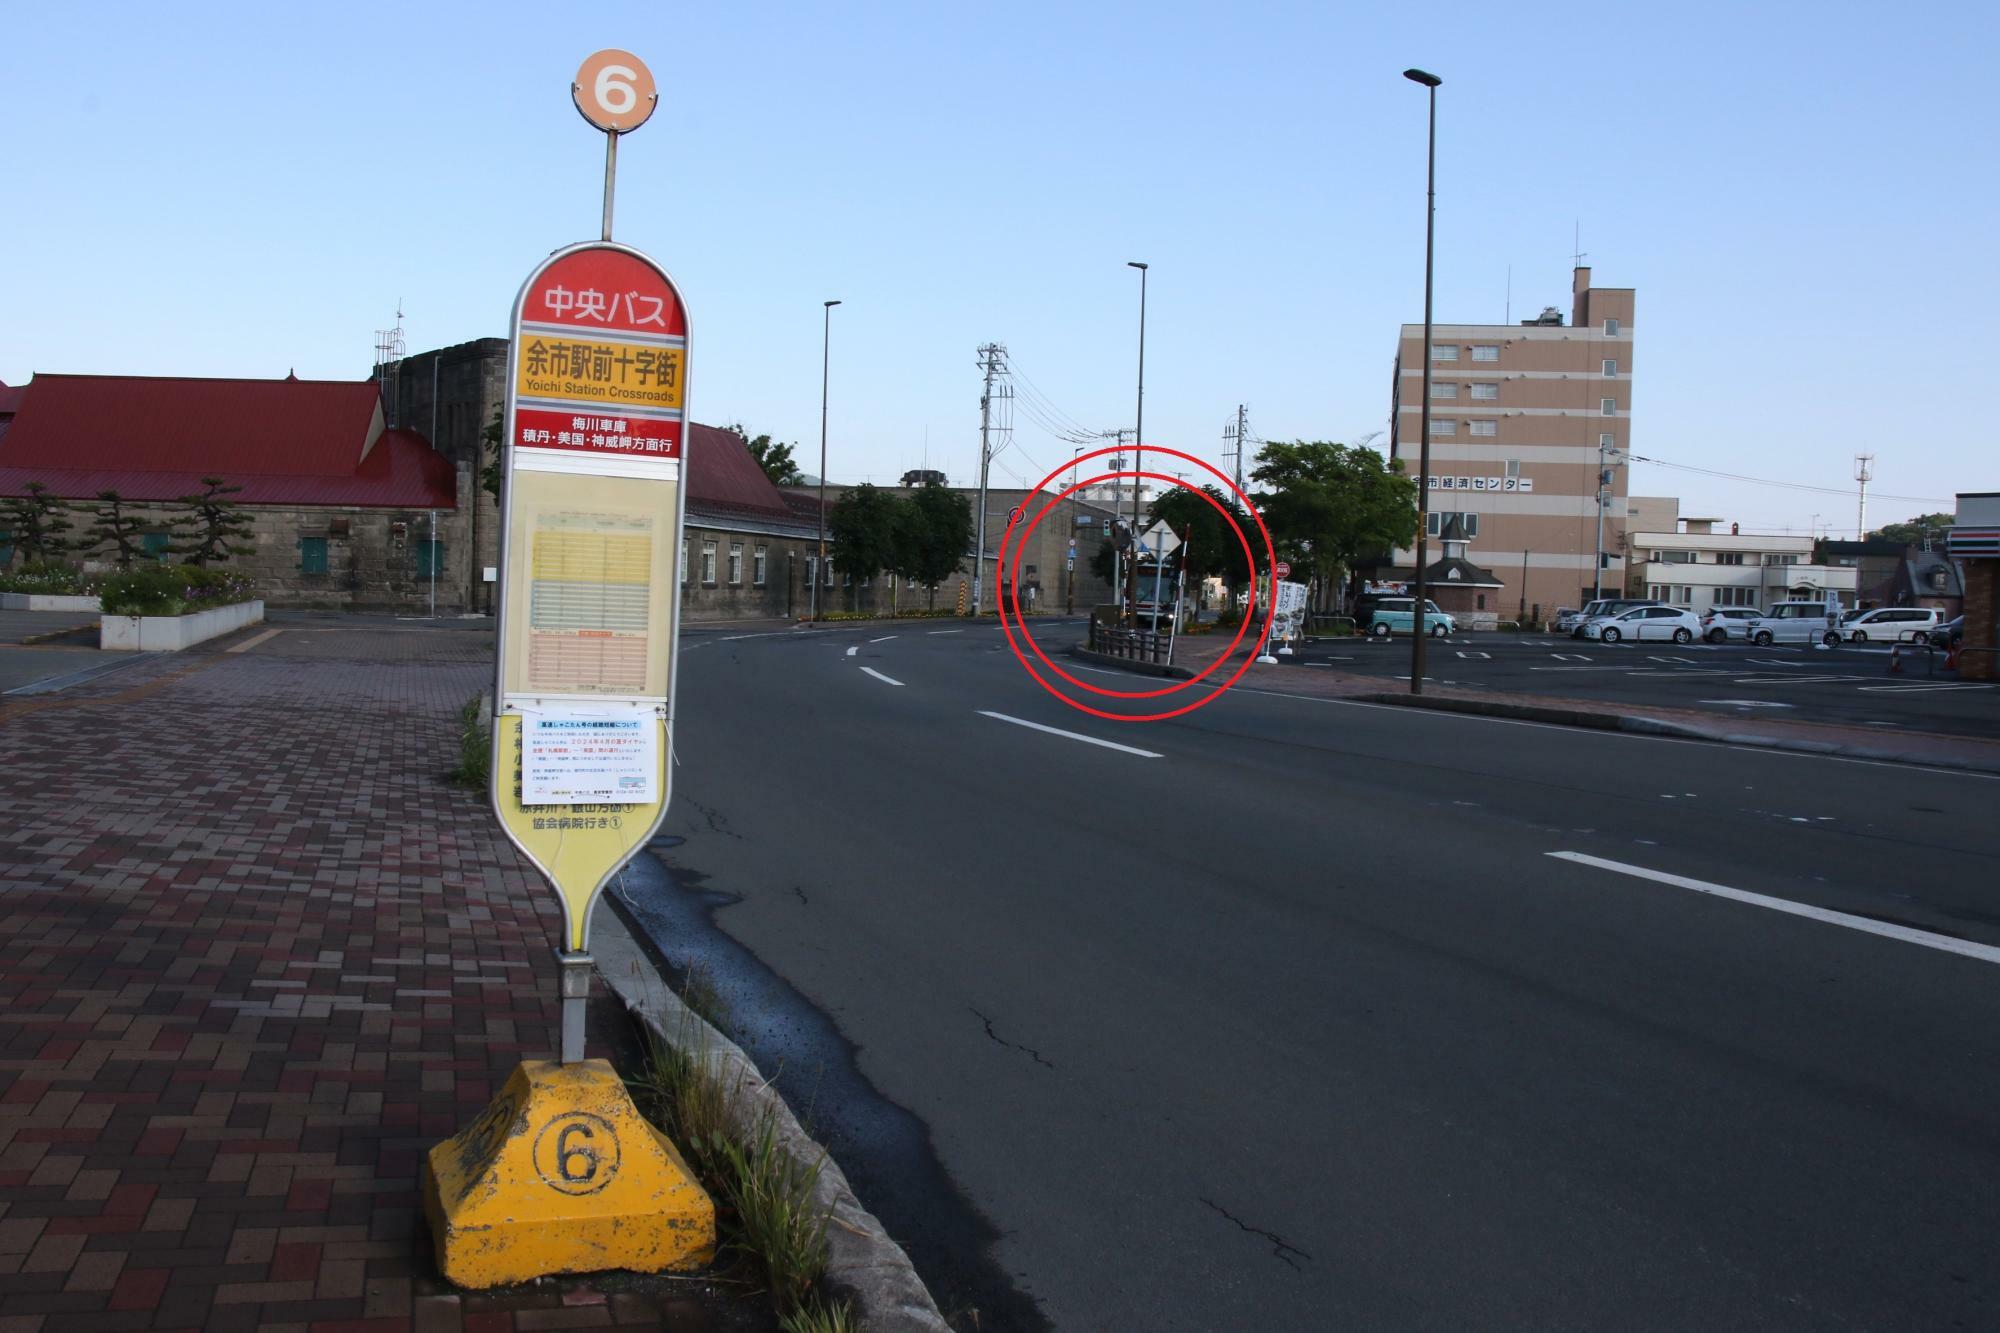 6番バス停の斜め向かいに小樽行き各停が停まる5番バス停